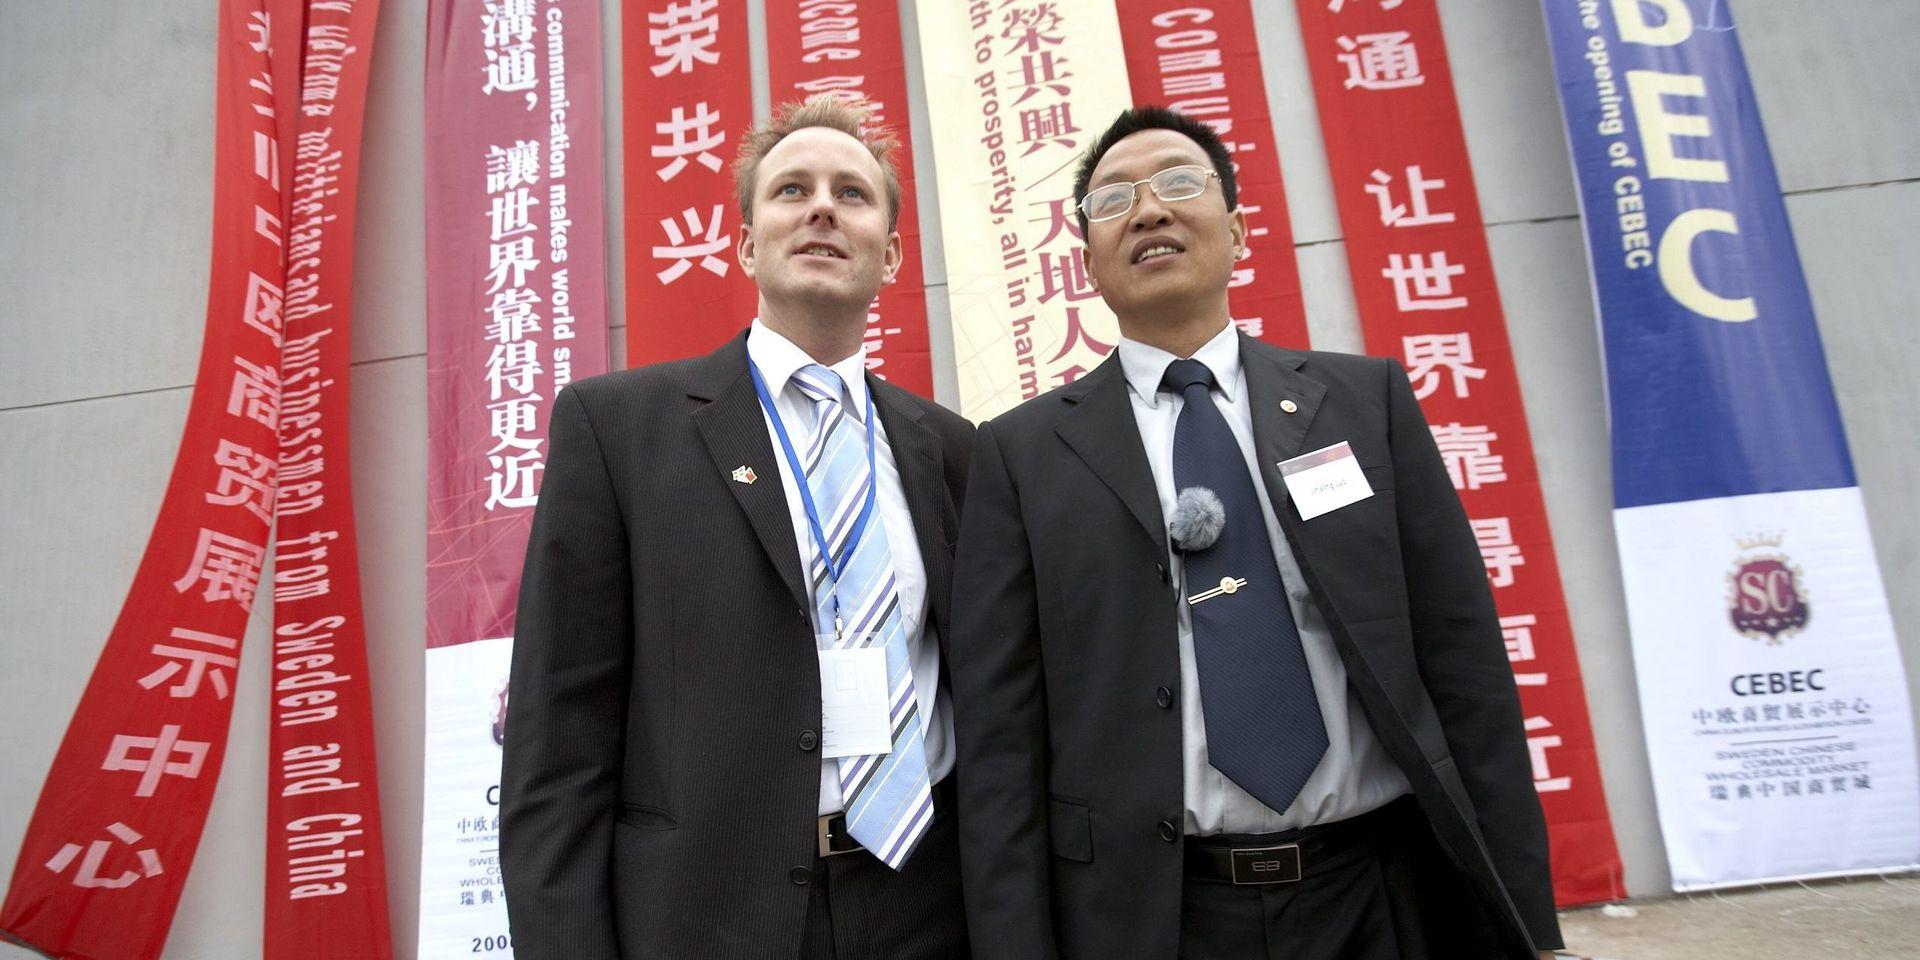 Första etappen av det kinesiska företaget Fanerduns satsning på ett handelscentrum i Kalmar invigdes officiellt i september 2007 med fyrverkeri och kinesisk musik. Johan Persson kommunalråd, (S) och ägaren och koncernchefen för Fanerdun Group, Jinxing Lou, under invigningen.